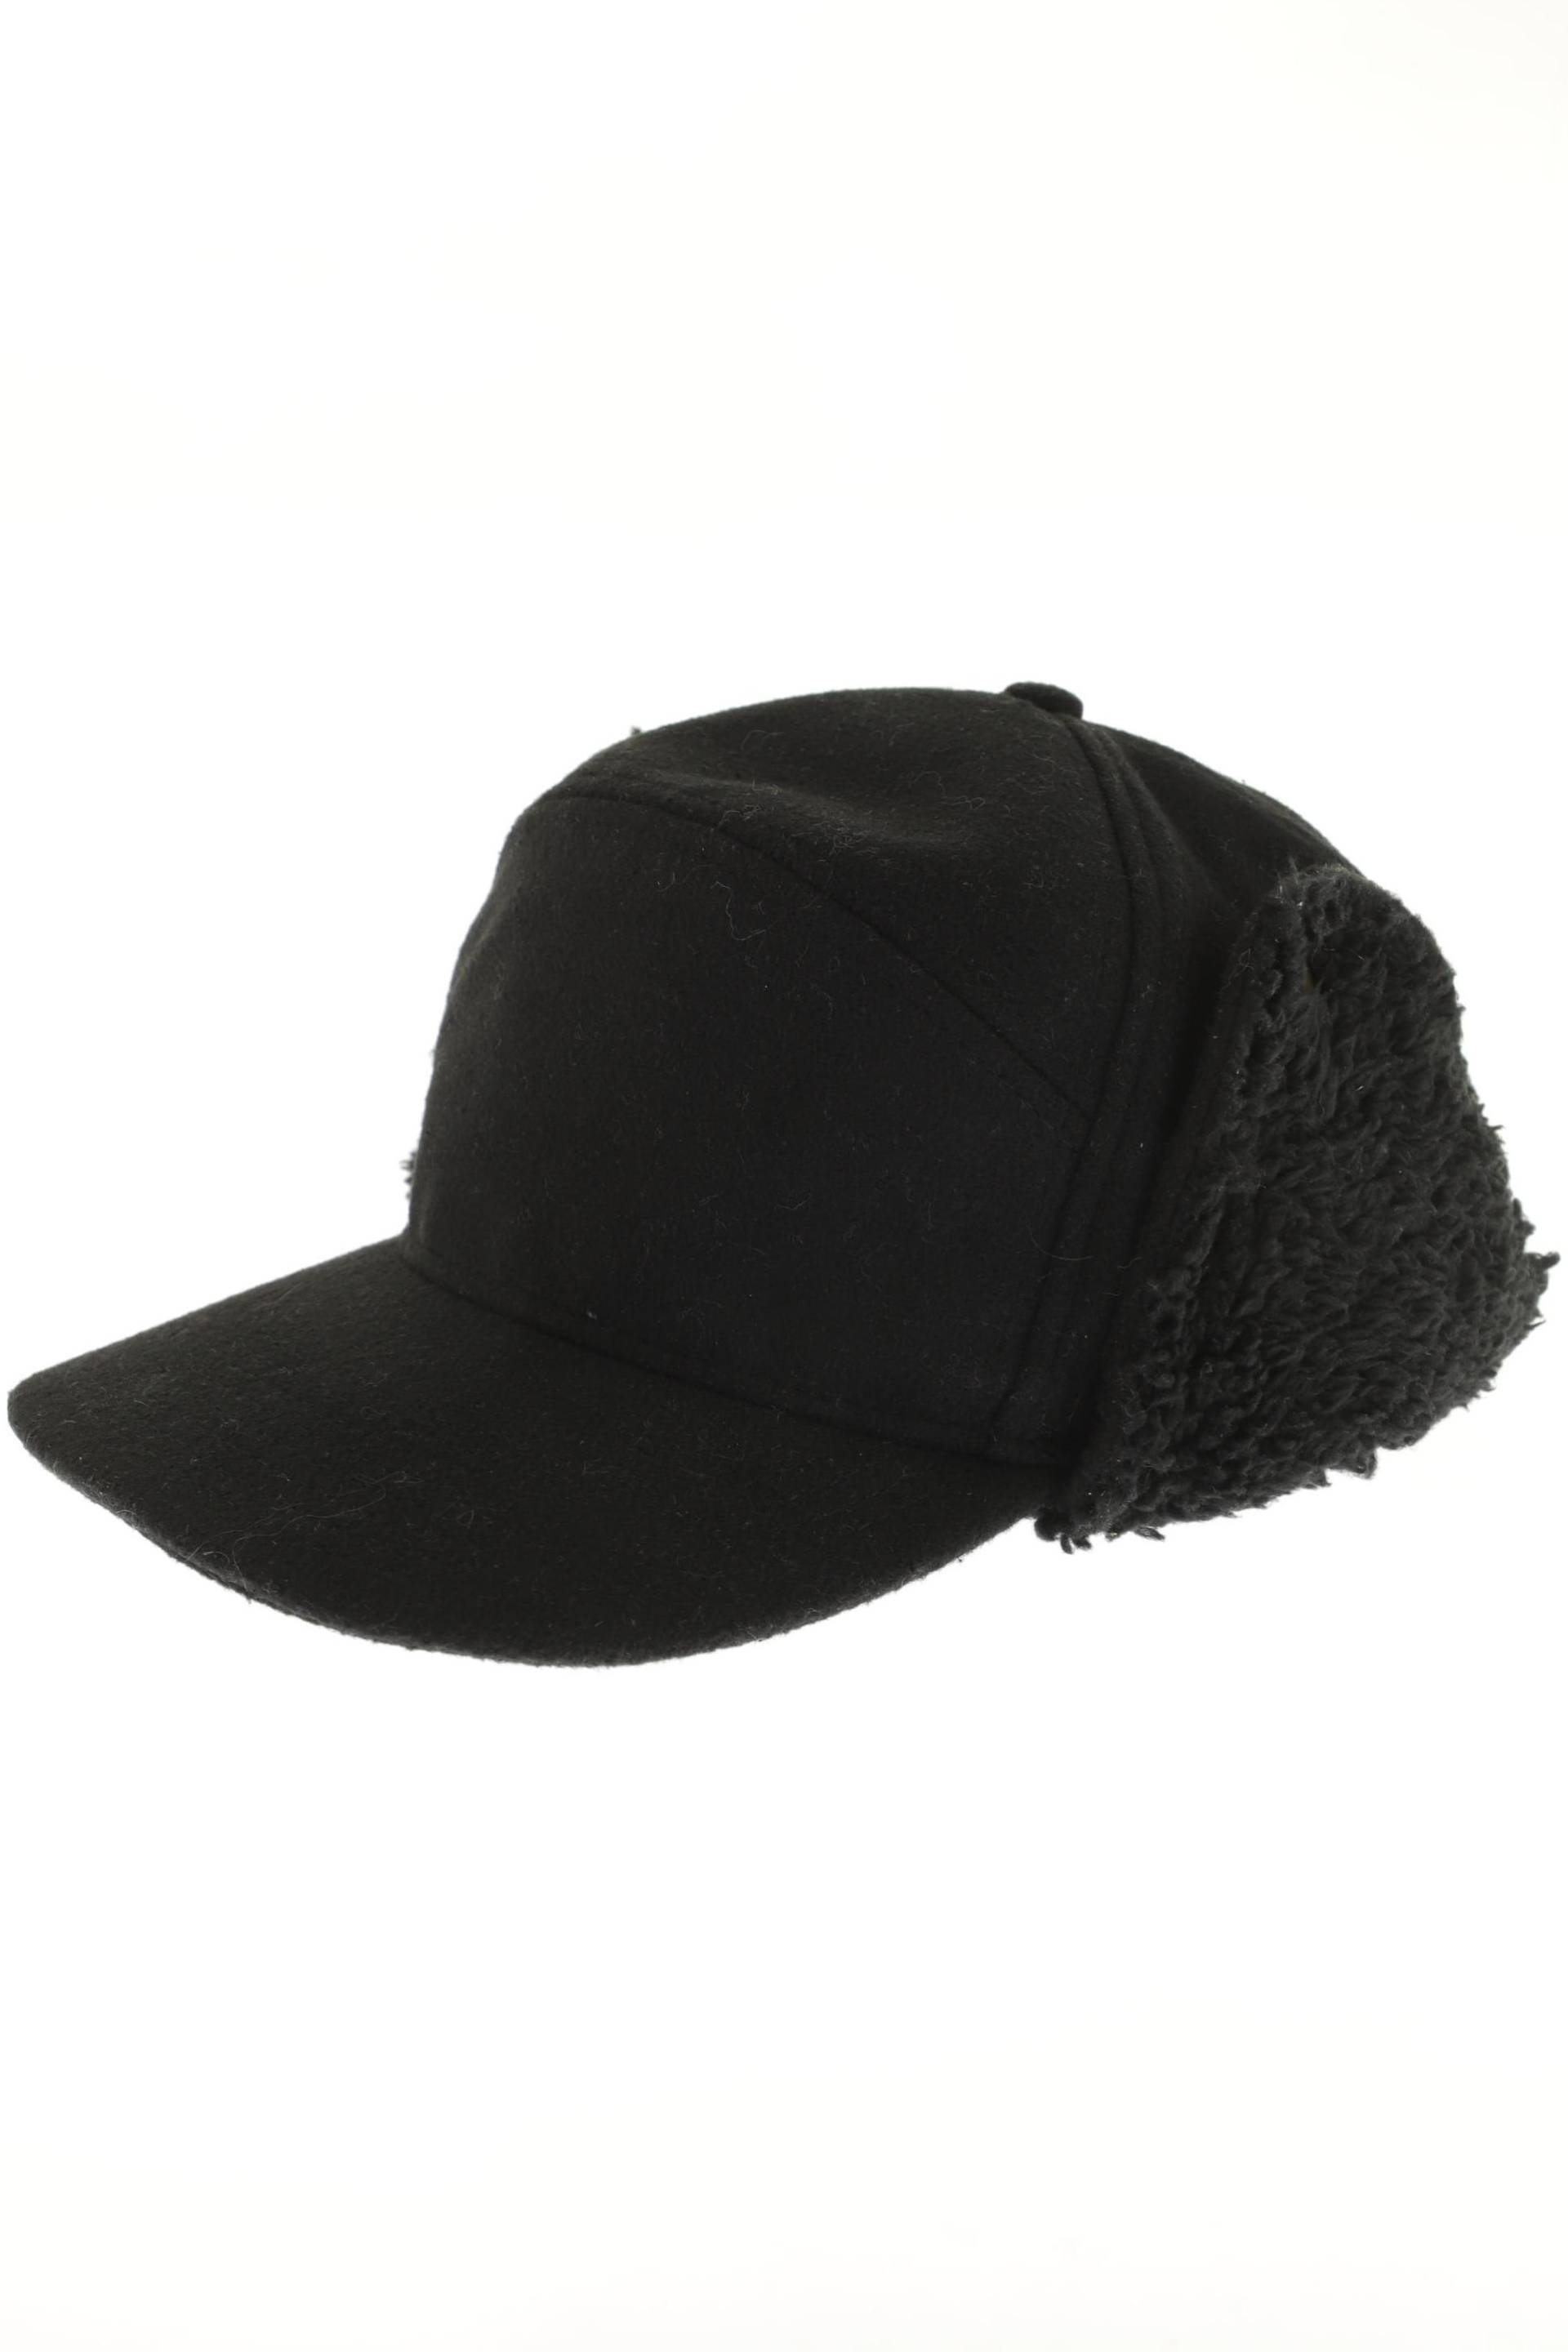 Brandit Herren Hut/Mütze, schwarz von Brandit